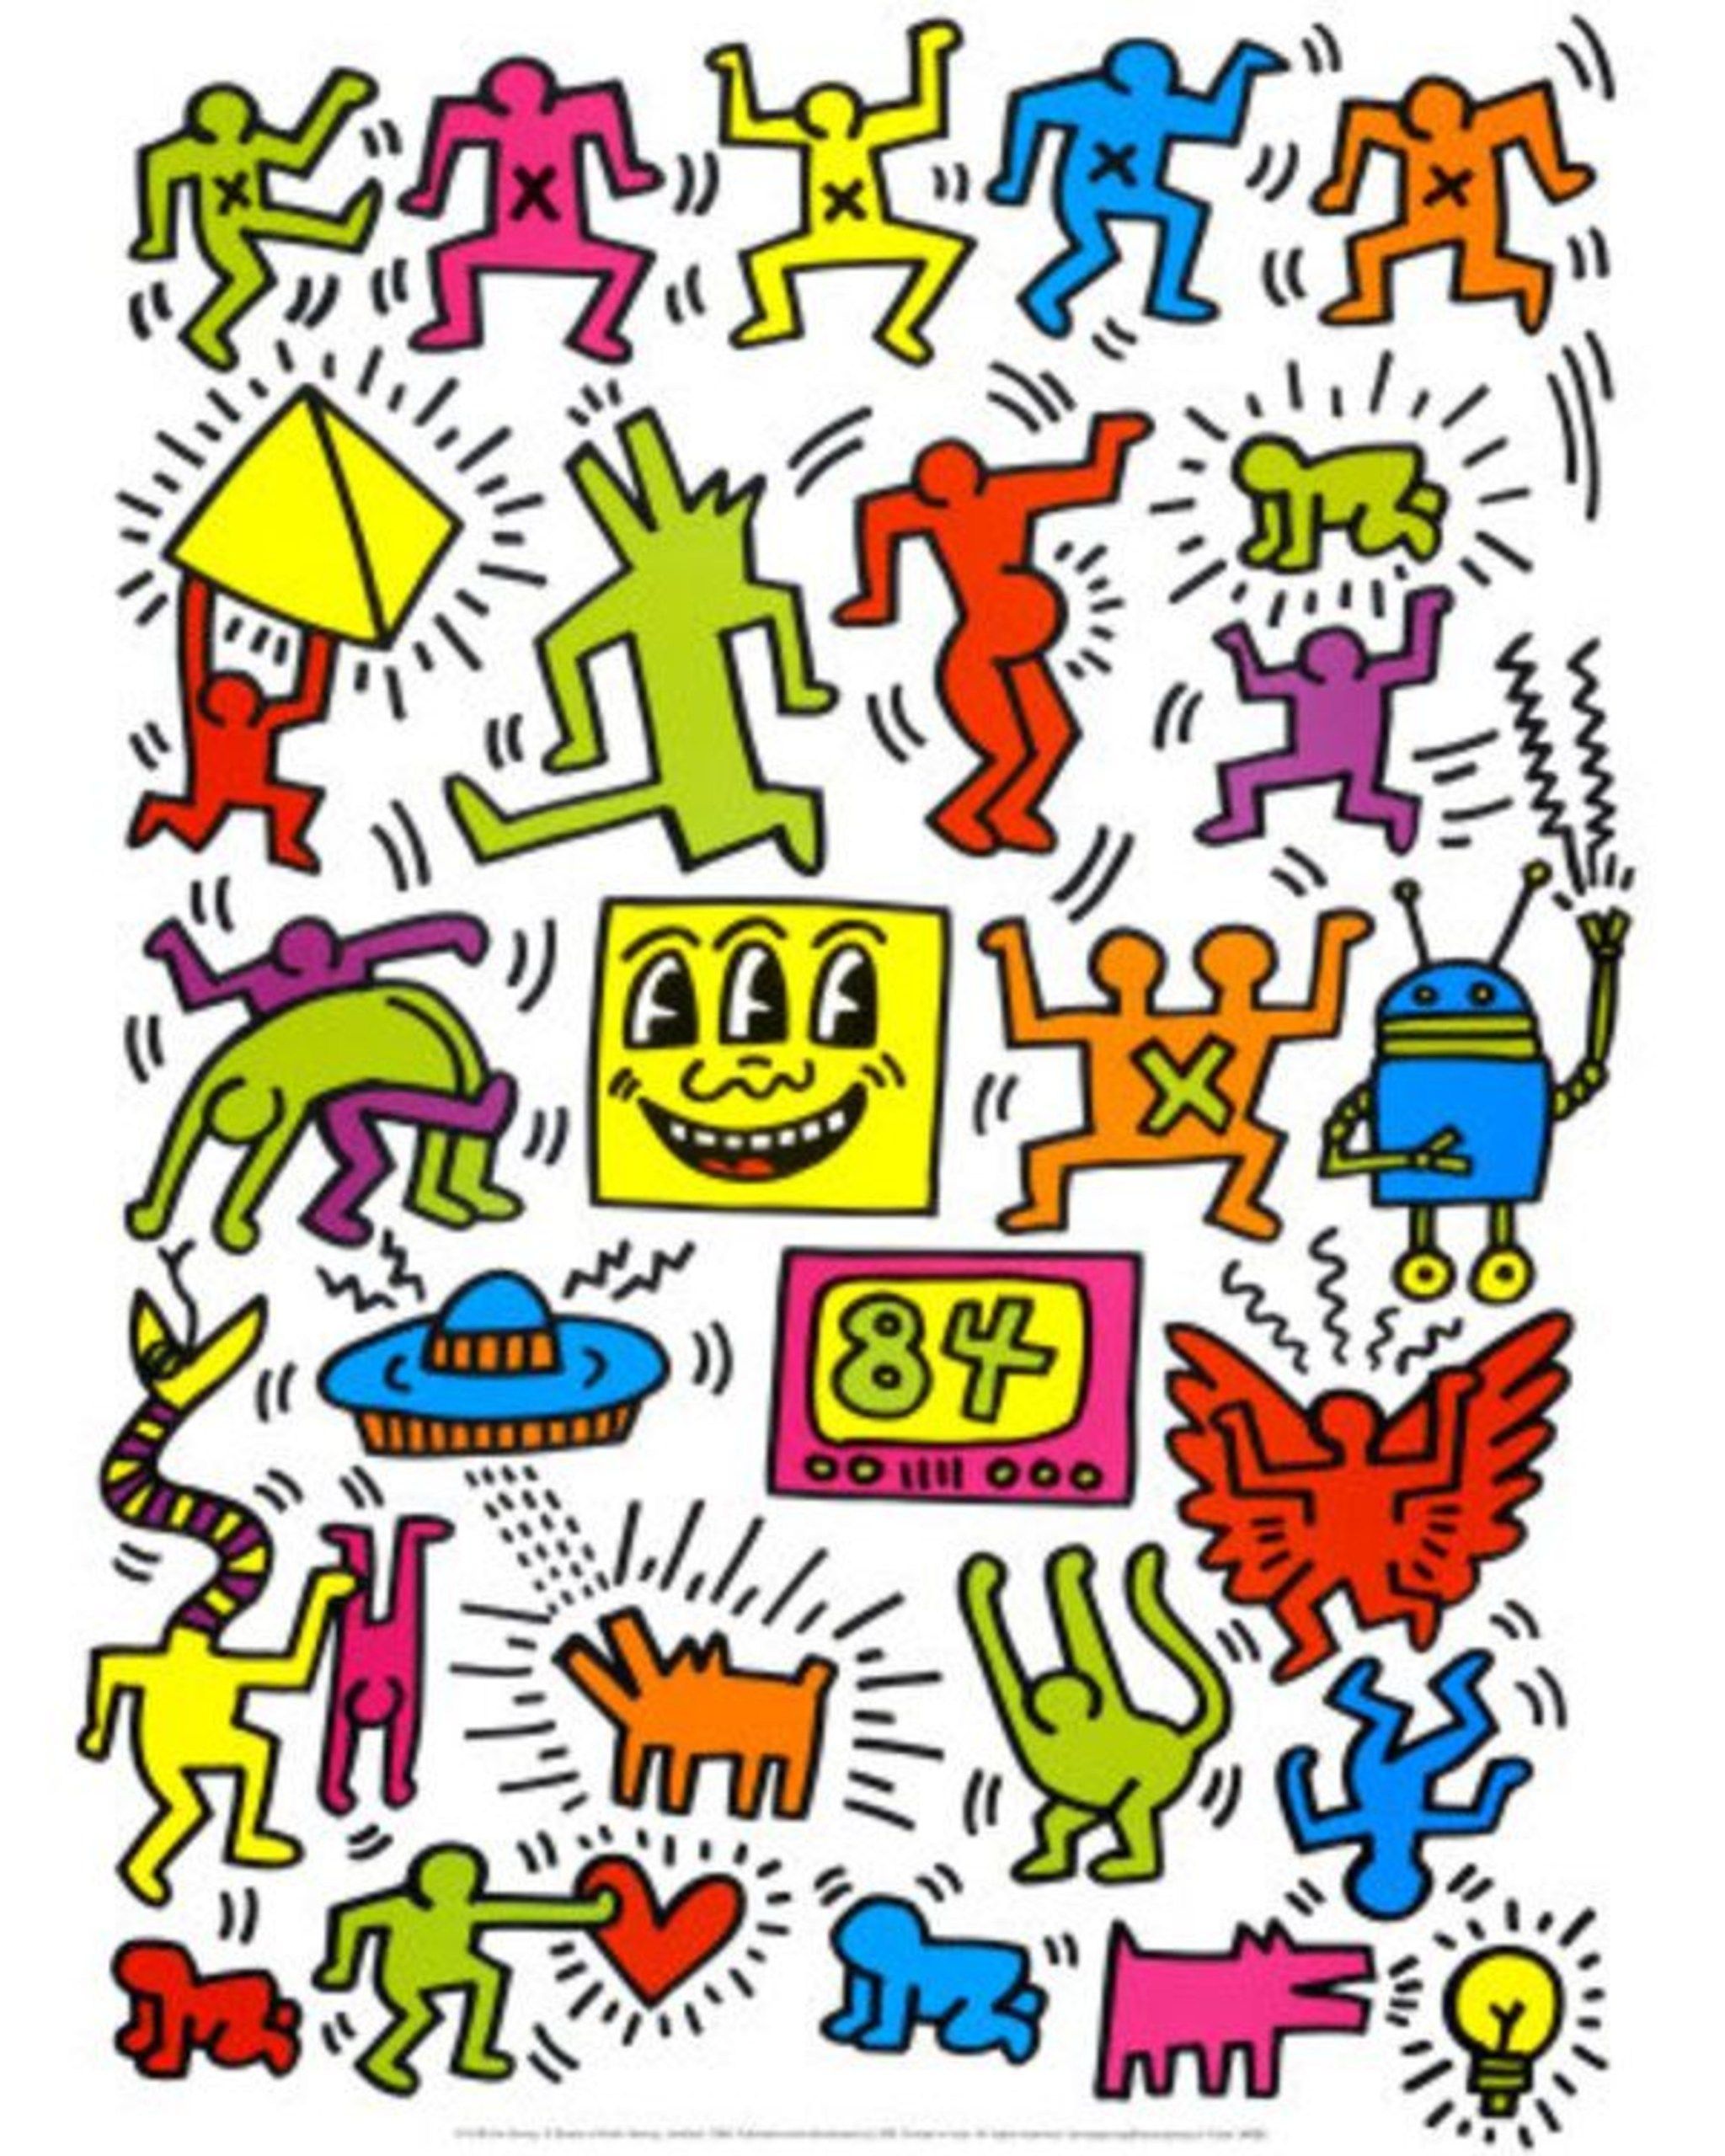 Keith Haring Wallpaperwallpaper.dog